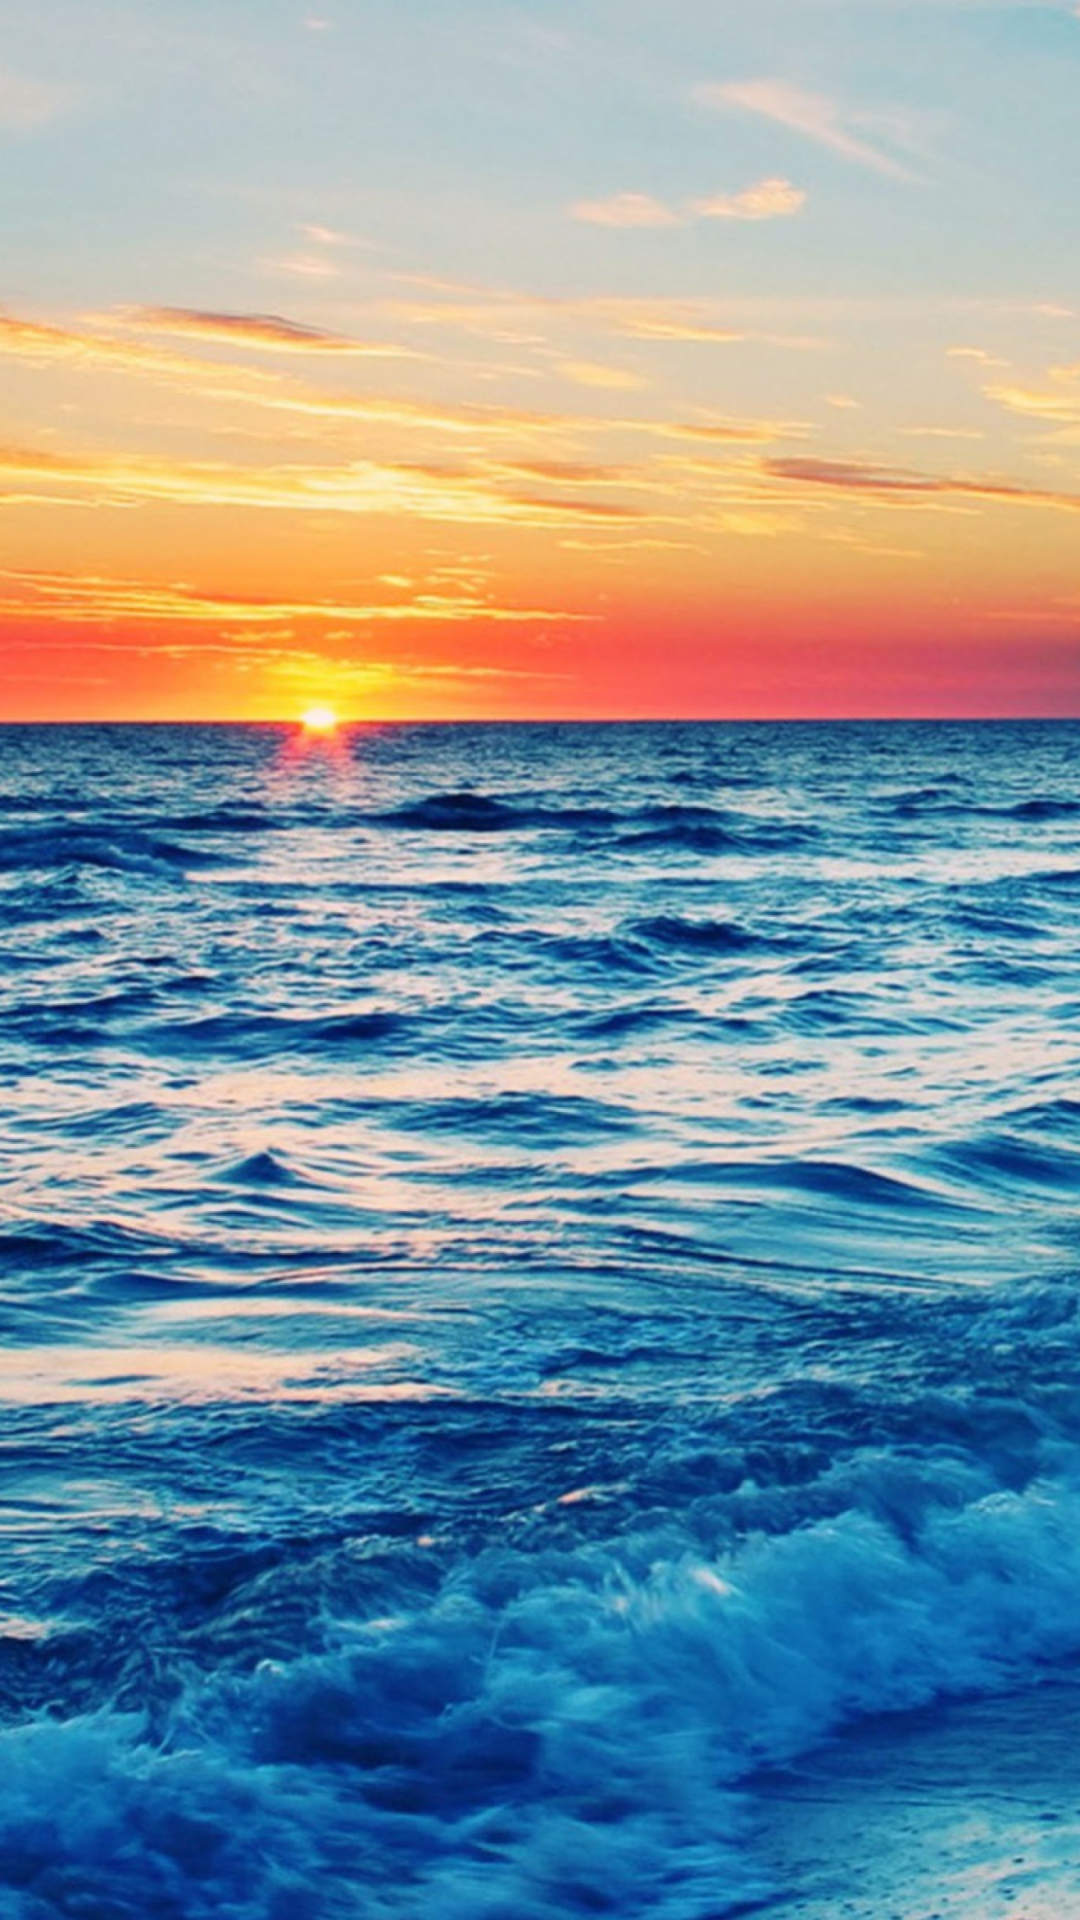 Ocean Beach At Sunset wallpaper 1080x1920